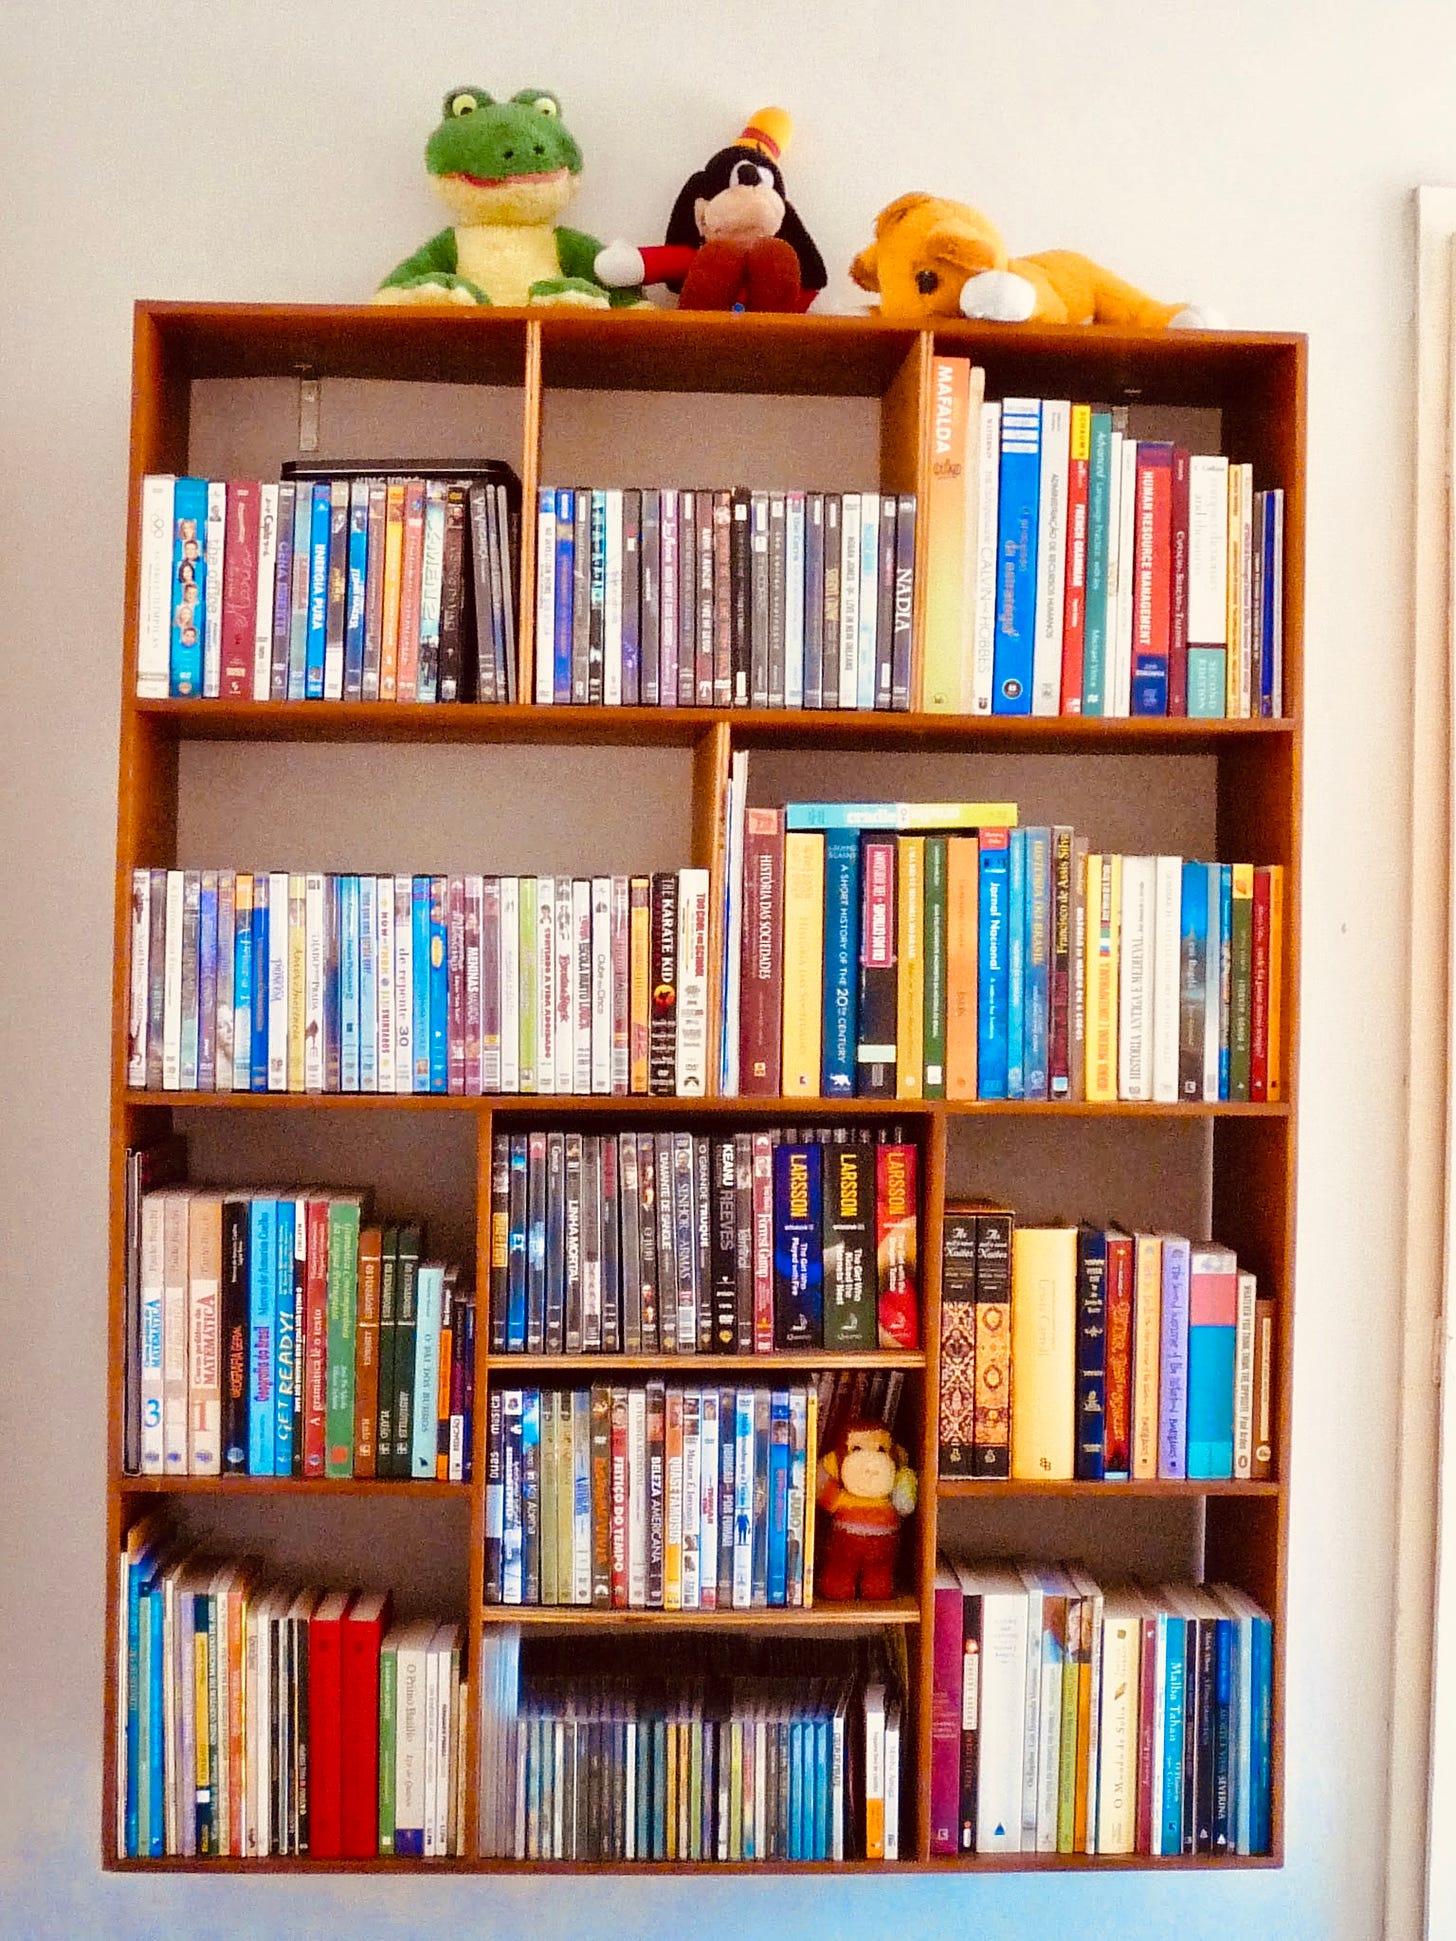 Estante de Cintia, fixada à parede, com diversos nichos cheios de livros, CDs e DVDs. No topo, 3 bichinhos de pelúcia: um sapinho, um Pateta e um Simba, do Rei Leão.